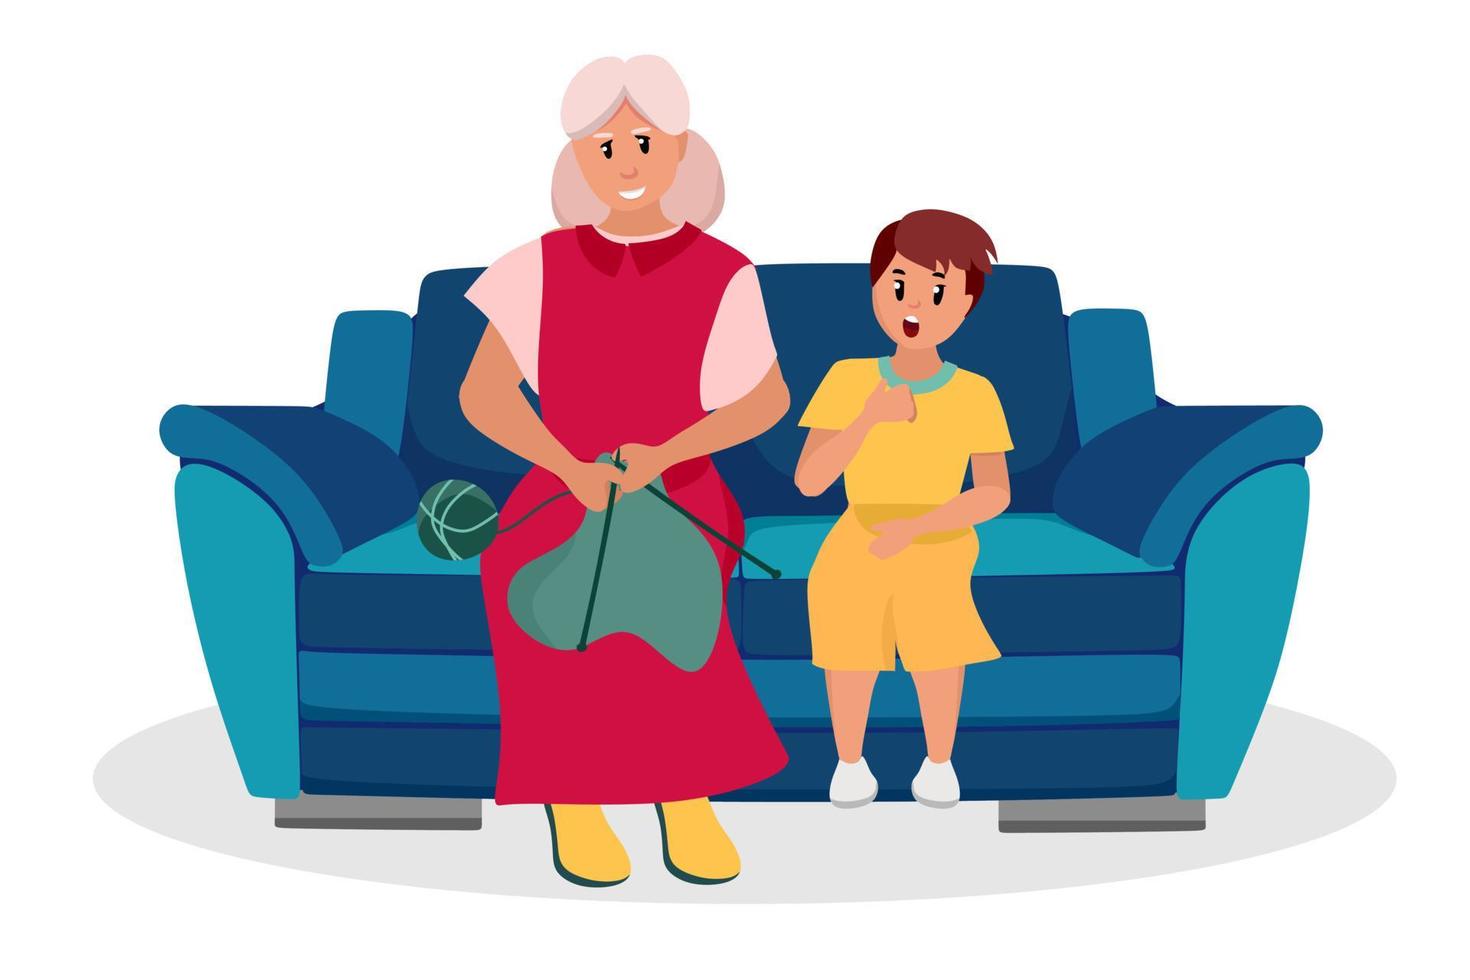 den äldre kvinnan är en mormor med sitt barnbarn i soffan. äldre människor är seriefigurer. gammal ålder. vektor illustration av en platt stil, isolerad på en vit bakgrund